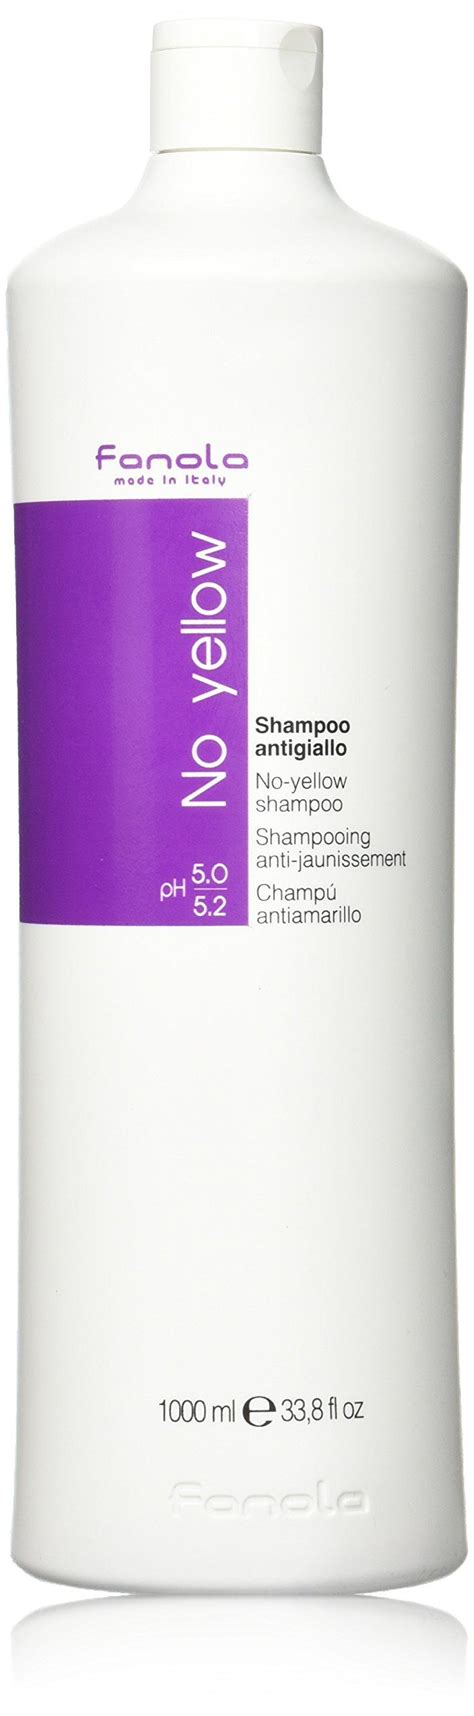 Fanola No Yellow Shampoo Large 1000ml Bottle Purple Shampoo For Blondes, No Yellow Shampoo, Anti ...